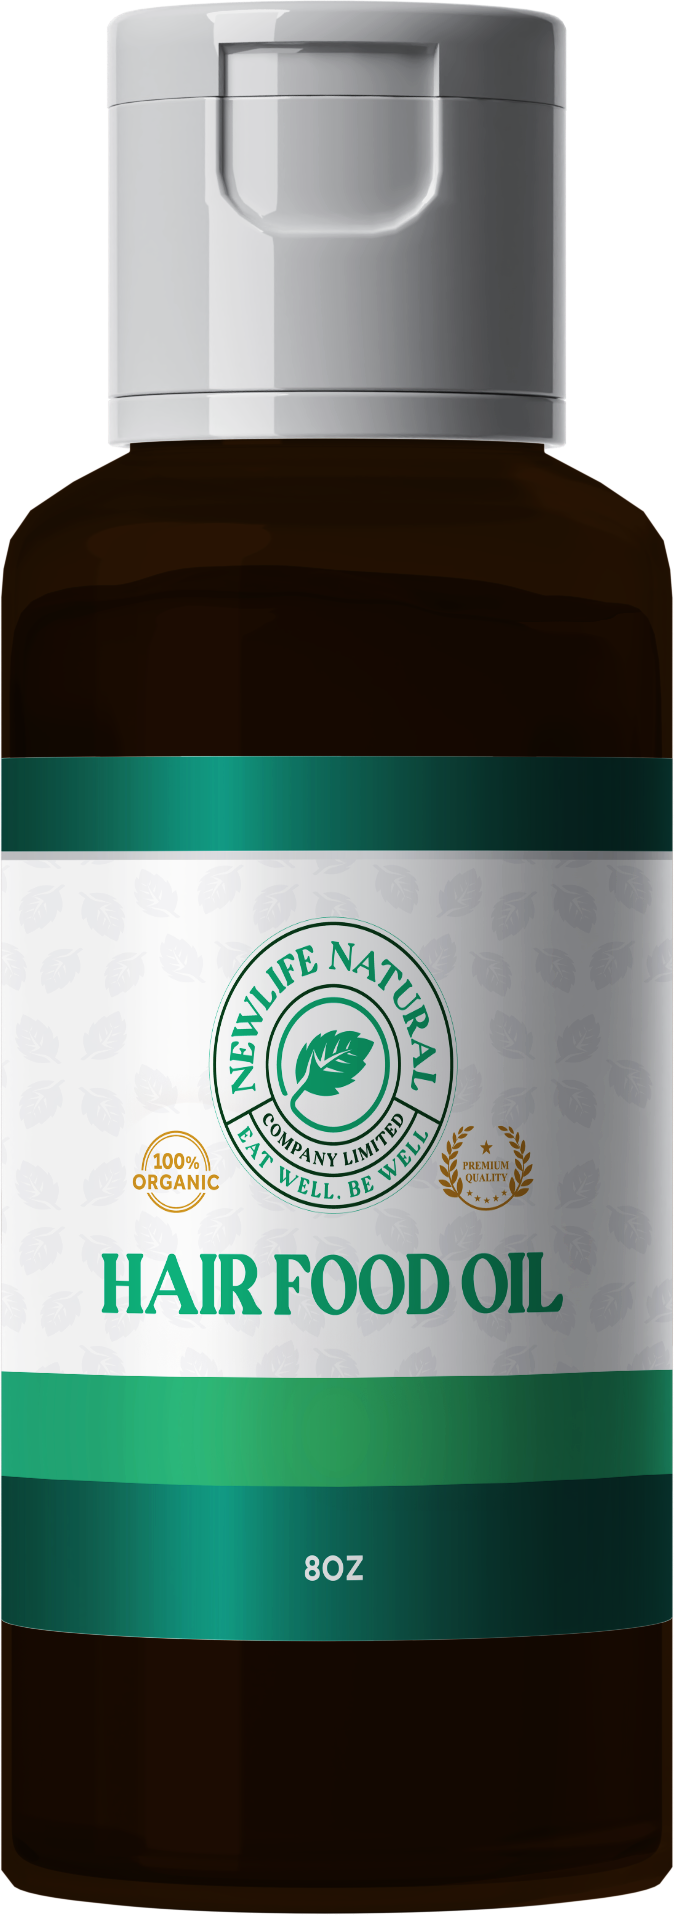 Hair Food Oil